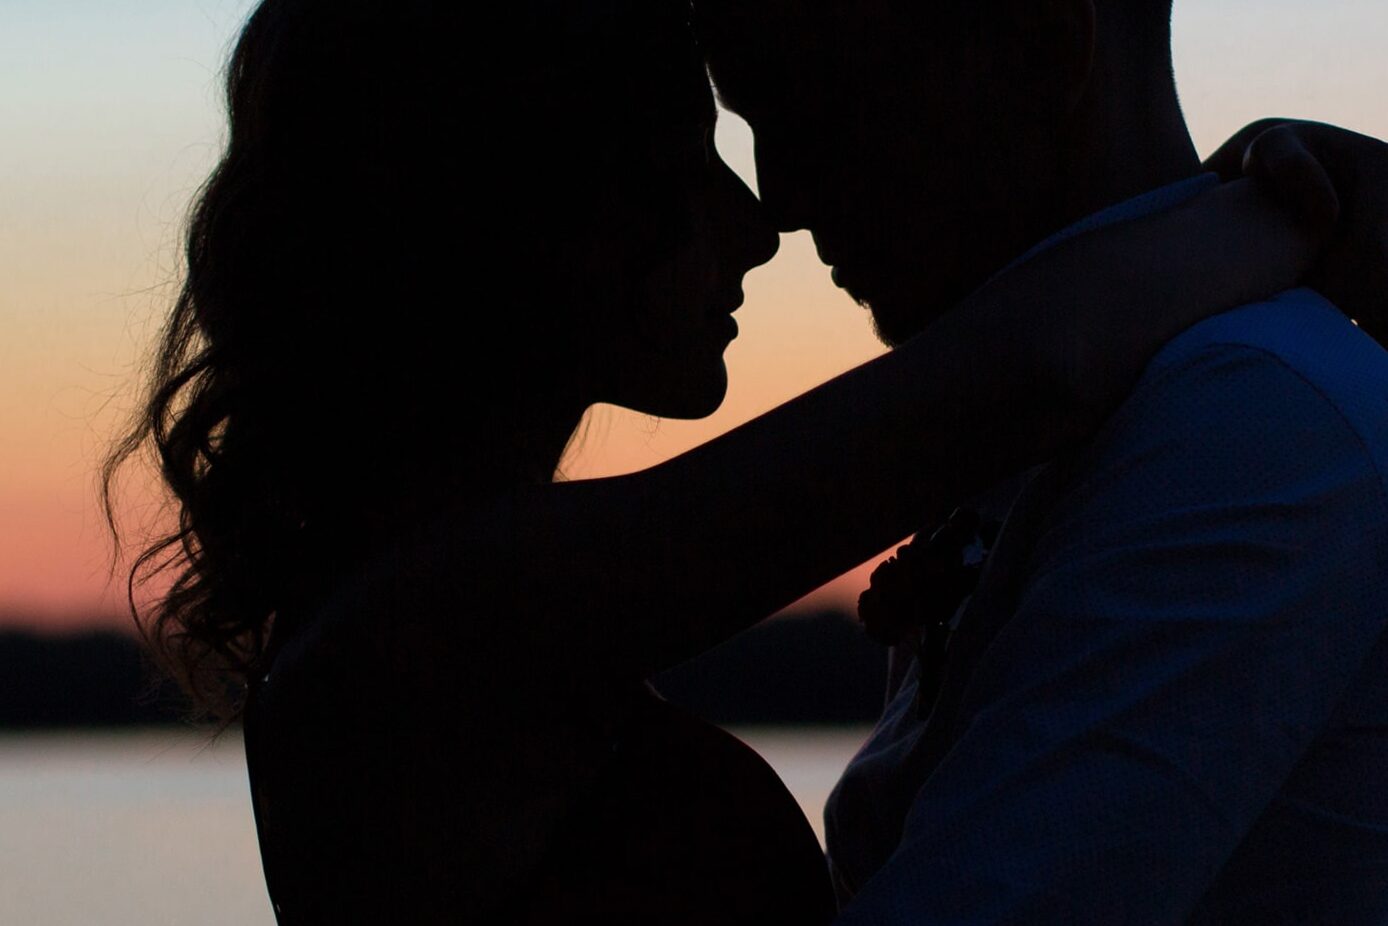 Mann und Frau umarmen sich am Strand, im Sonnenuntergang